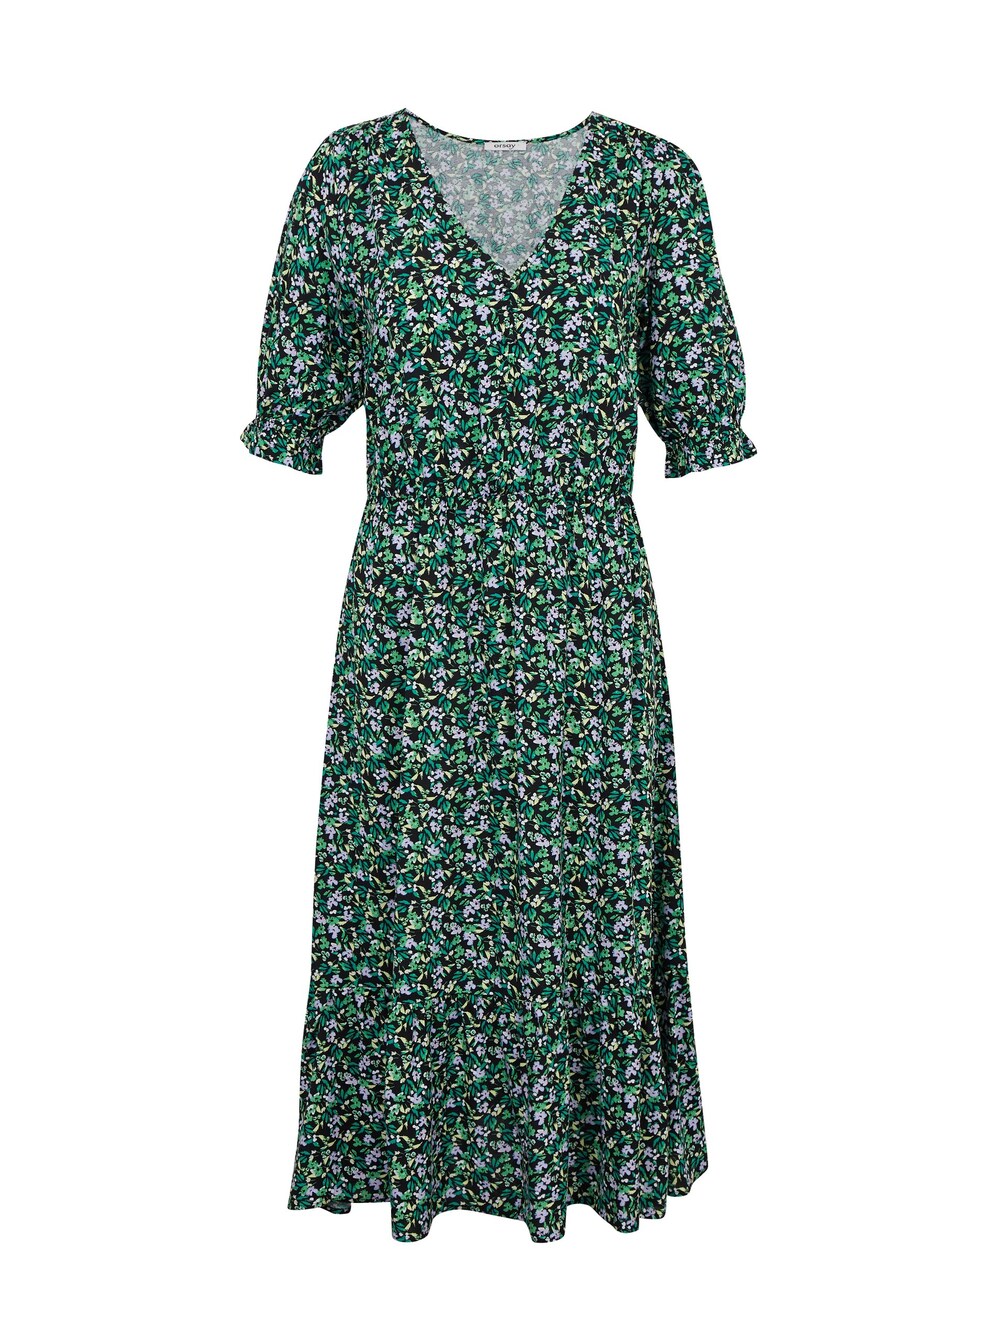 Рубашка-платье Orsay, темно-зеленый